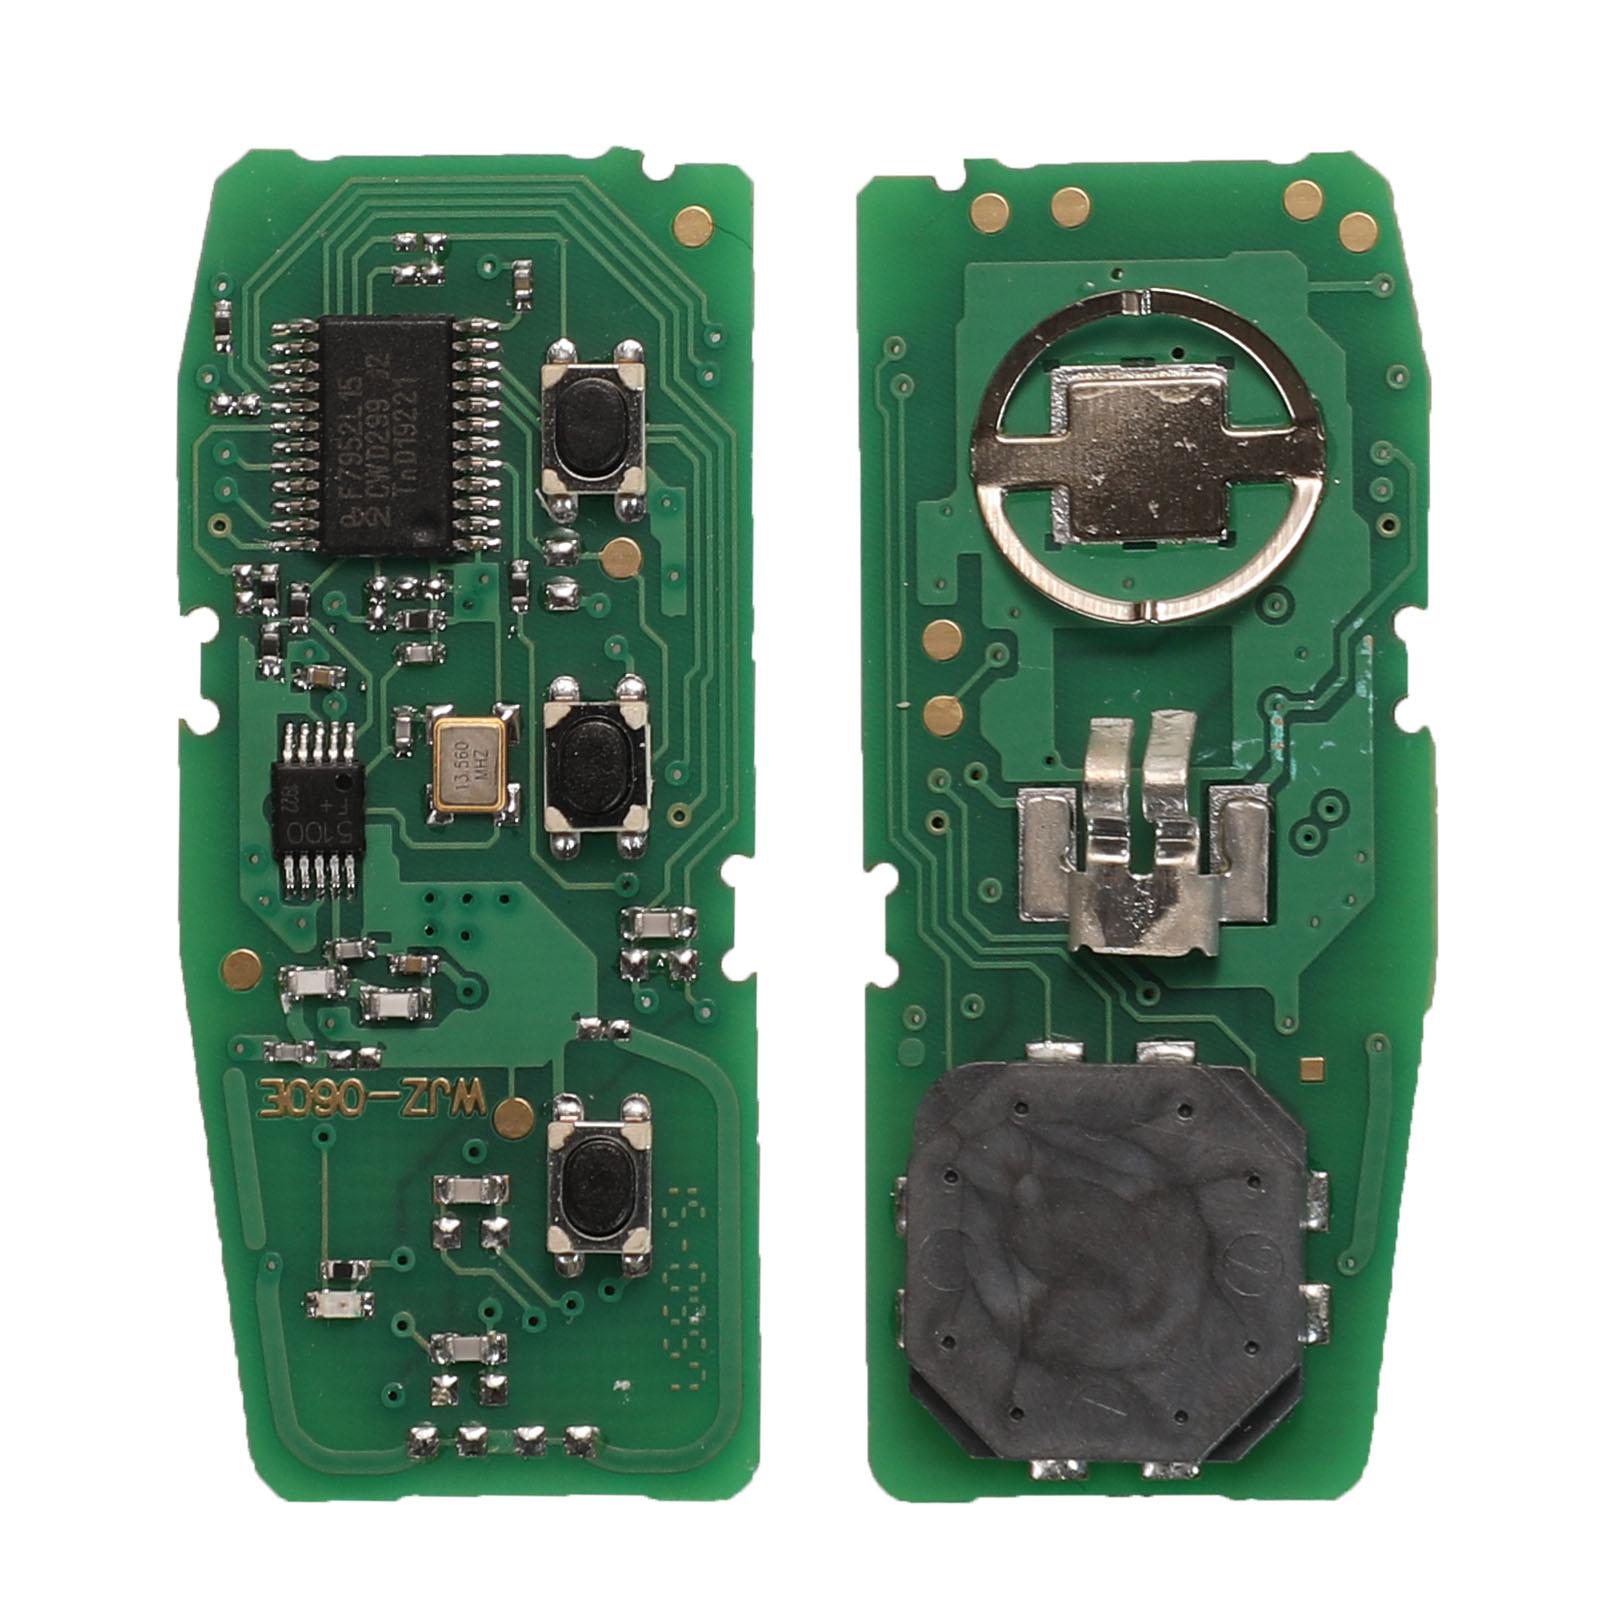 Изображение товара: Kutery 5 шт. 3 кнопки флип складной умный дистанционный ключ-брелок от машины 434 МГц ID46 Pcf7952 чип для Kia K5 FCC:95440-3W600